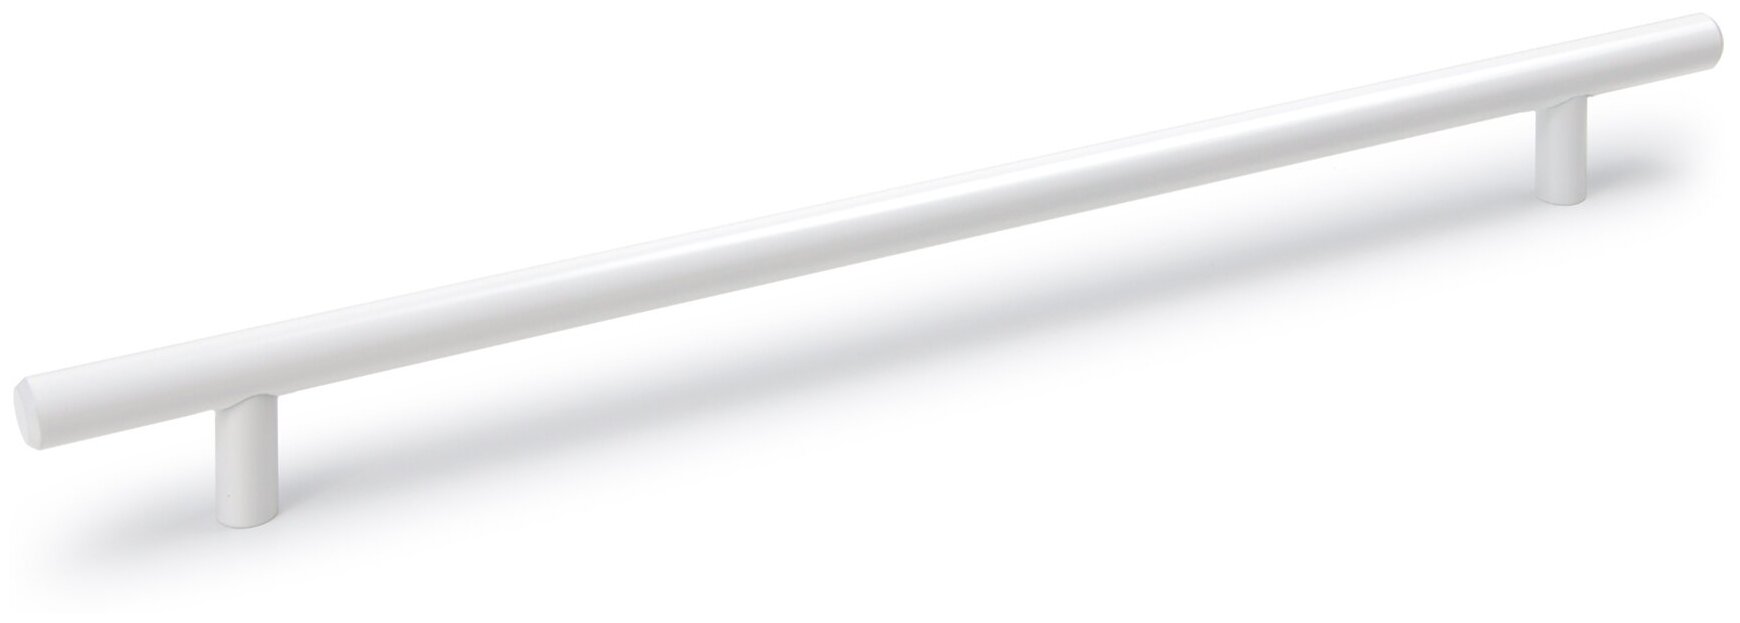 Мебельная ручка - рейлинг, длина 256 мм, диаметр 12 мм, цвет - белый